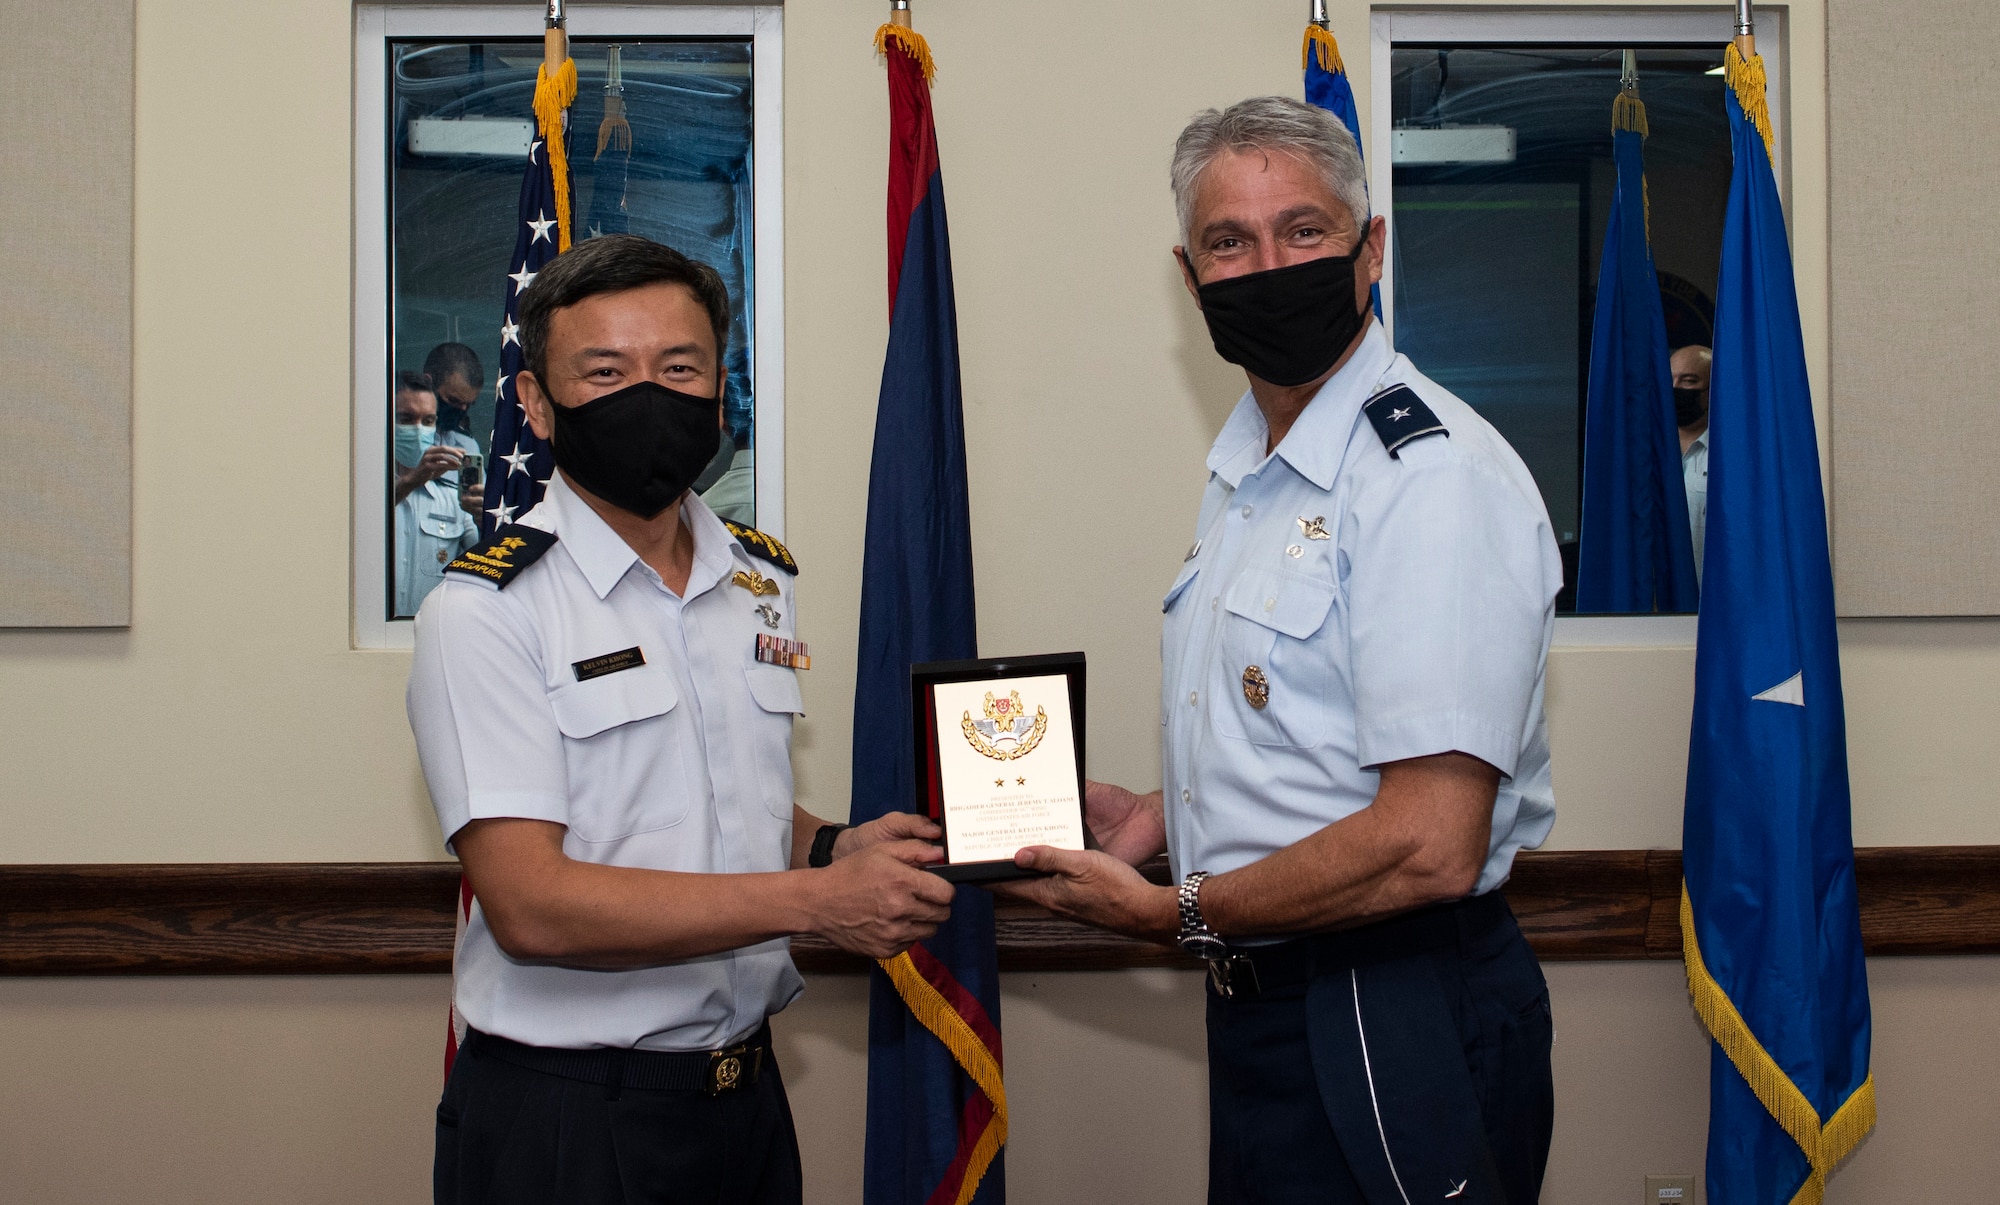 RSAF Air Force Chief visits Andersen AFB